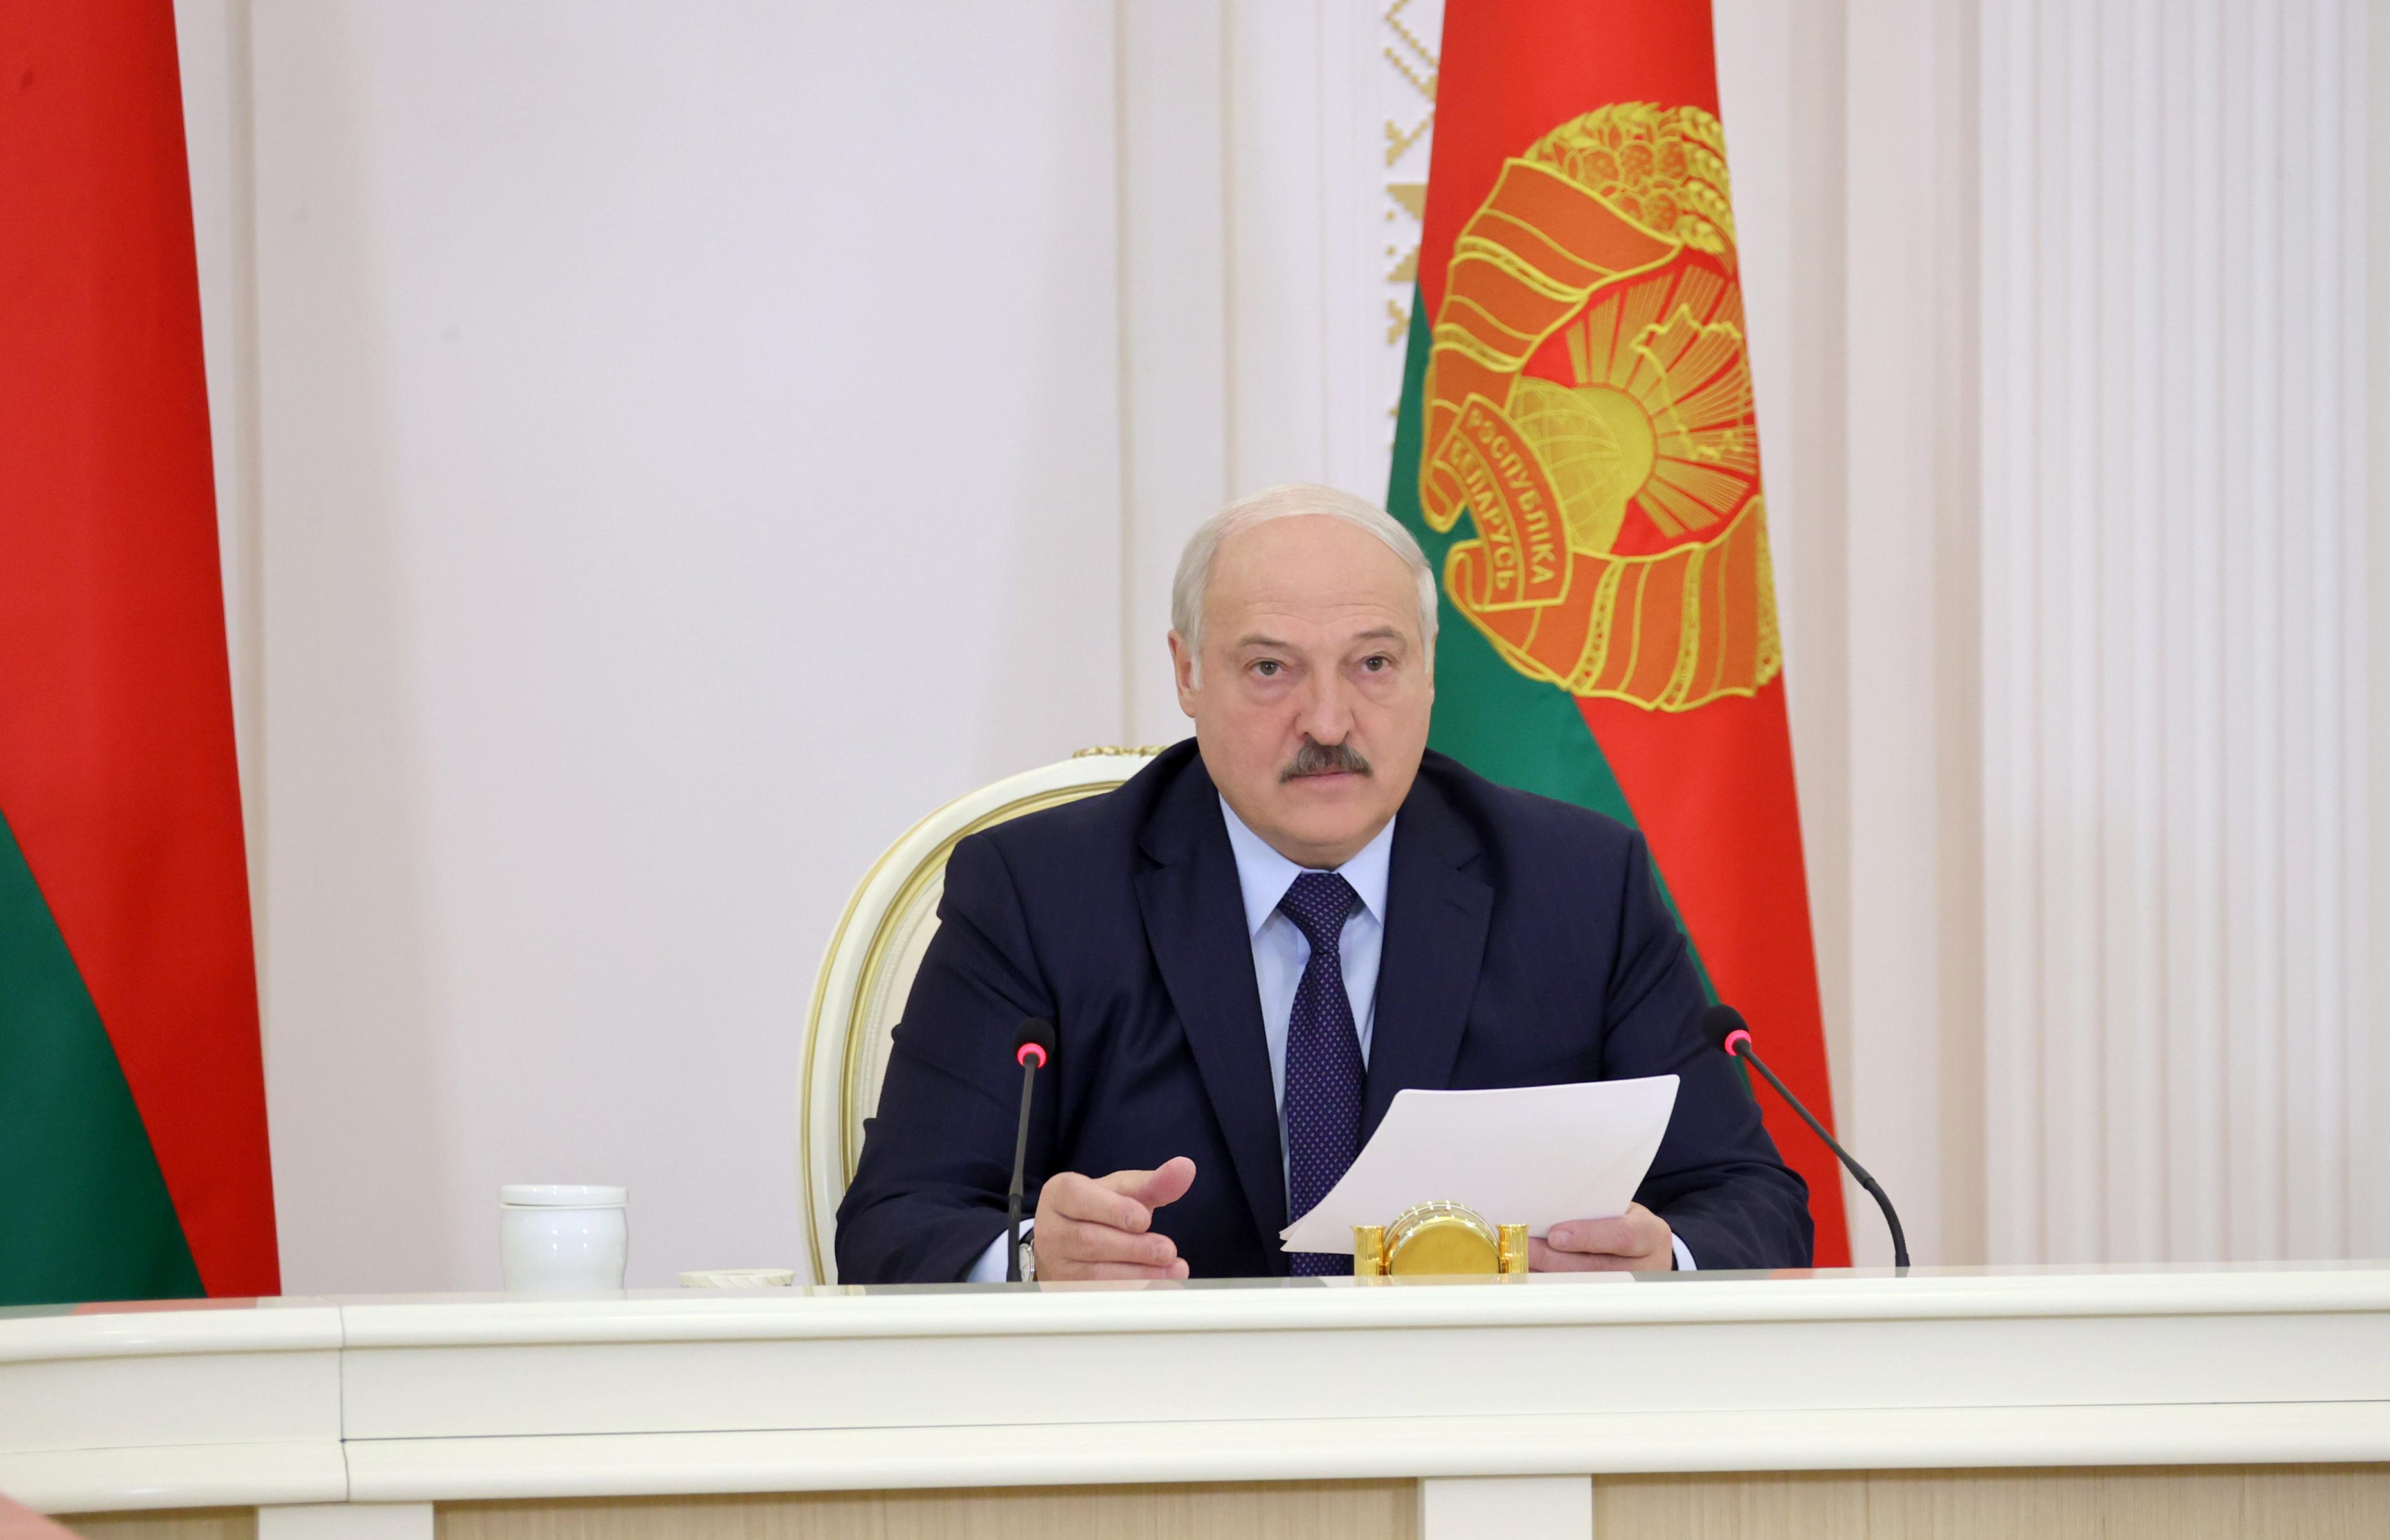 Александр Лукашенко: ожидаю от Правительства и Нацбанка действенных предложений по сдерживанию ценового роста